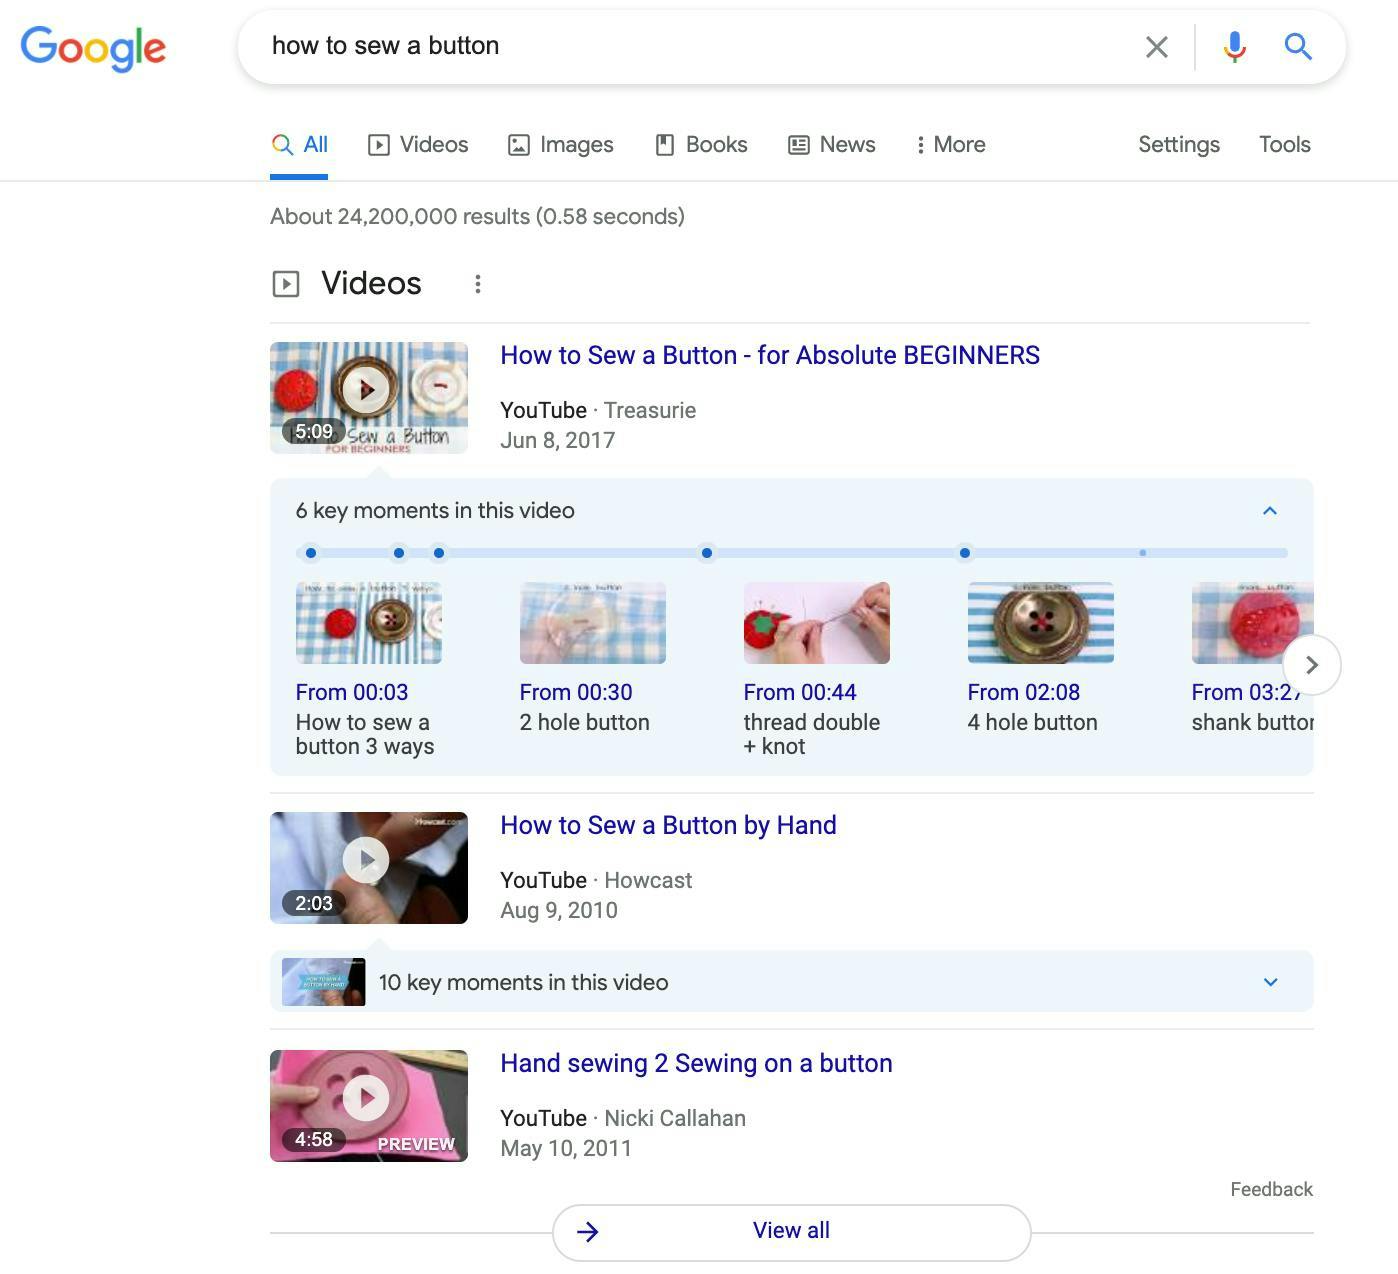 Résultats d'une recherche Google pour "How to Sew a Button" montrant des suggestions d'horodatages proposées par Google